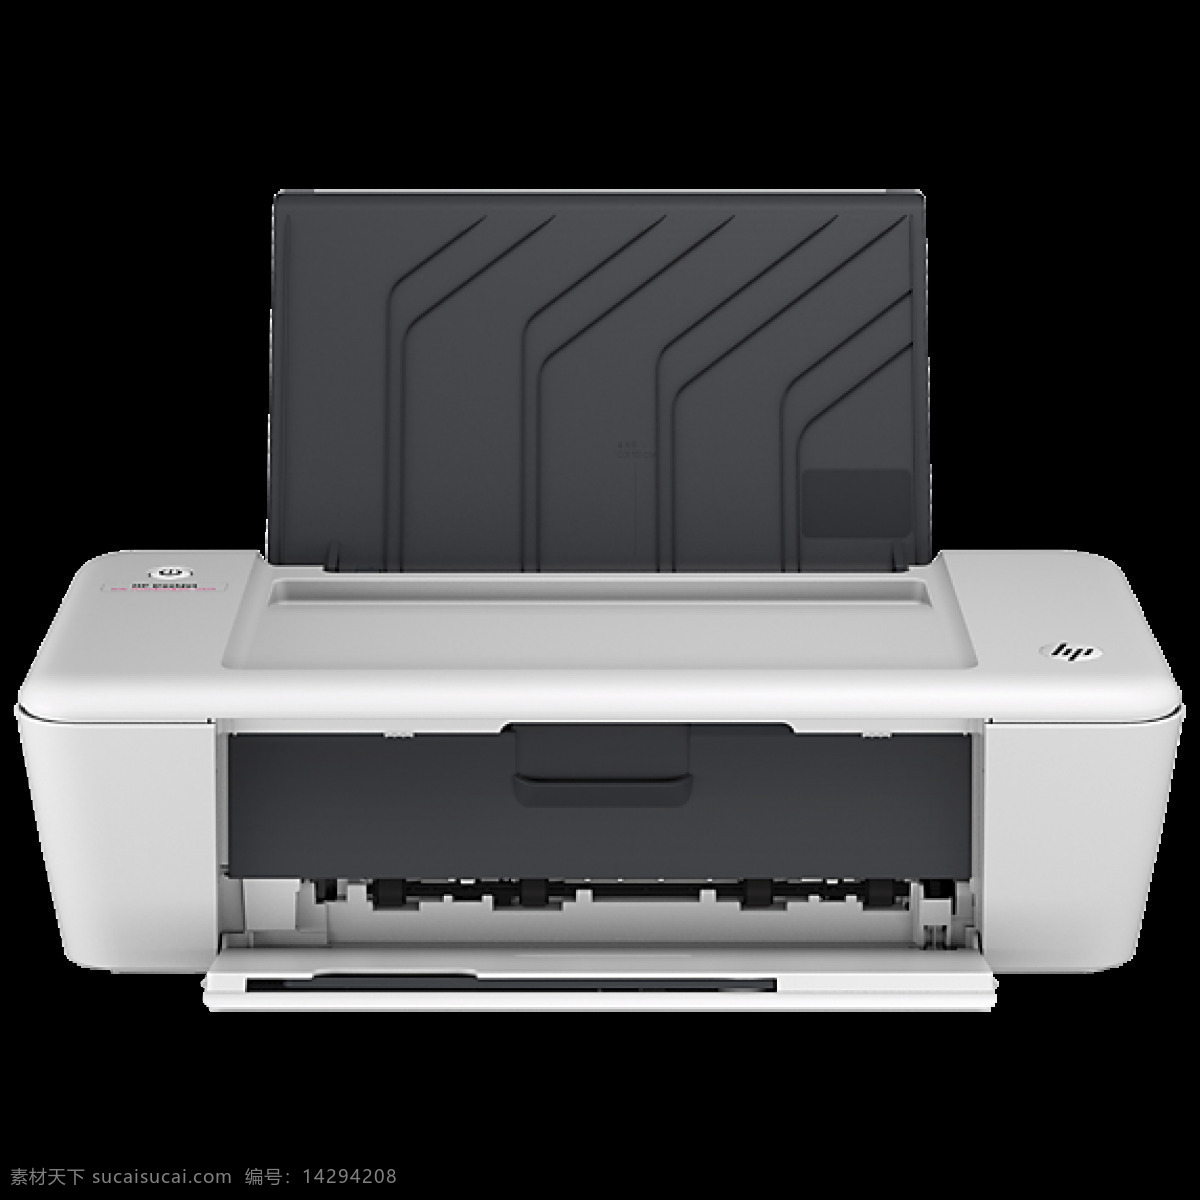 彩色 打印机 免 抠 透明 图 层 办公室打印机 激光打印机 大型打印机 打印机图标 工业打印机 一体打印机 彩色打印机 黑白打印机 针孔打印机 打印机图片 打印机素材